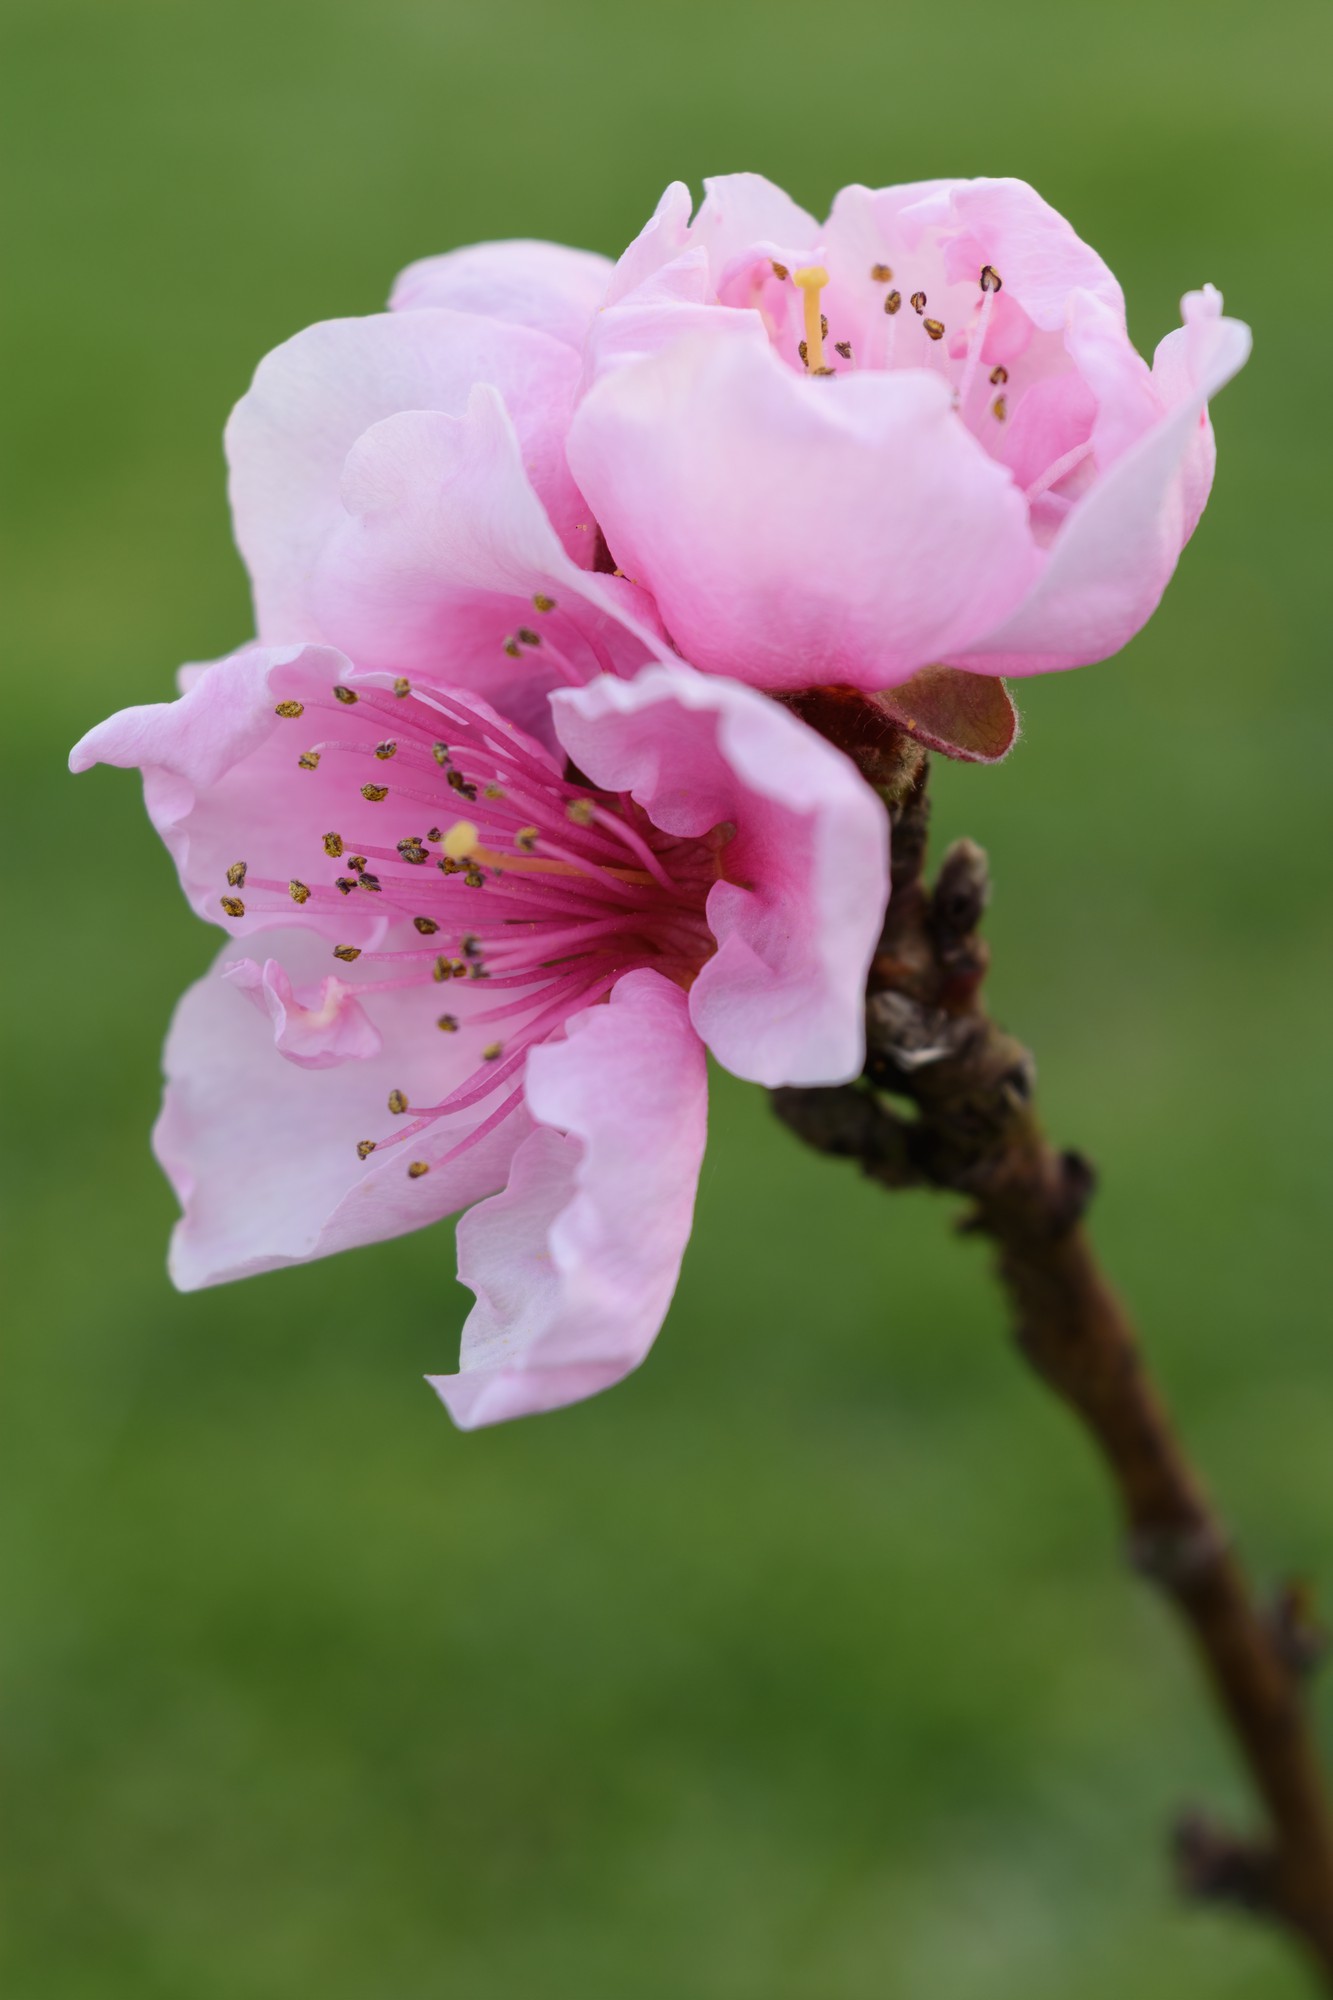 Vertical closeup shot of a beautiful pink-petaled cherry blossom flower